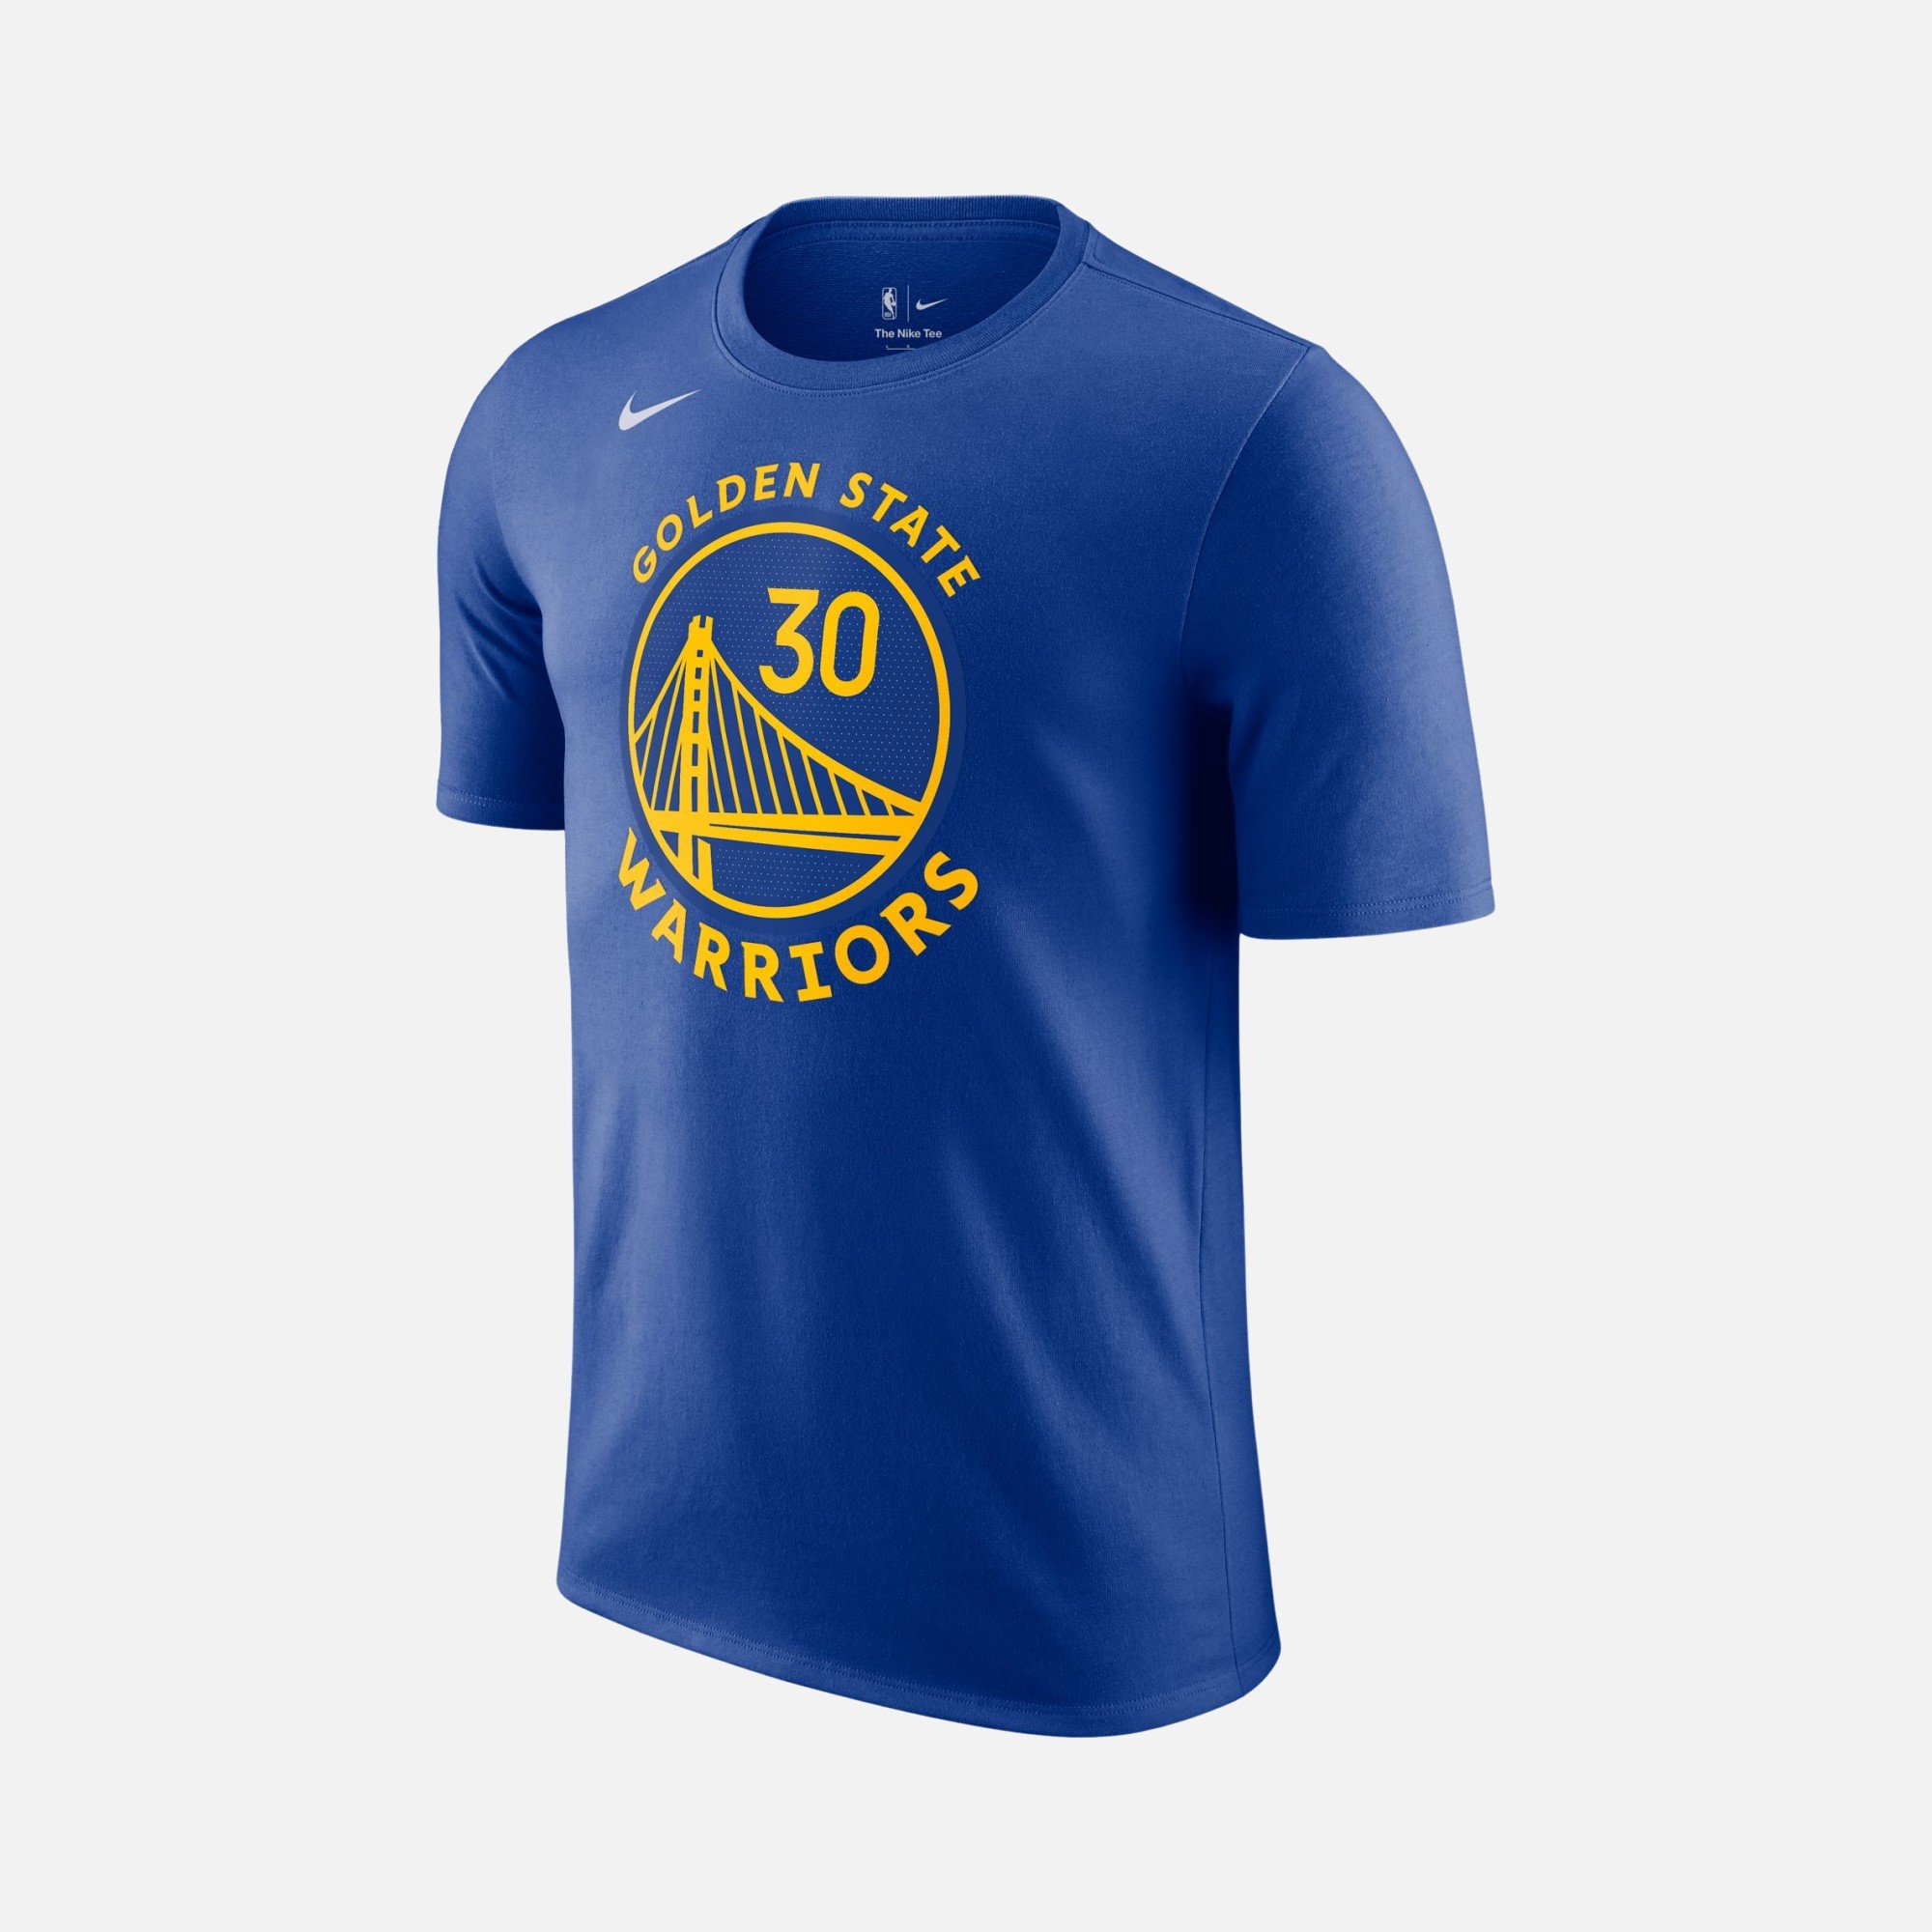 Nike Golden State Warriors NBA Short-Sleeve Erkek Tişört